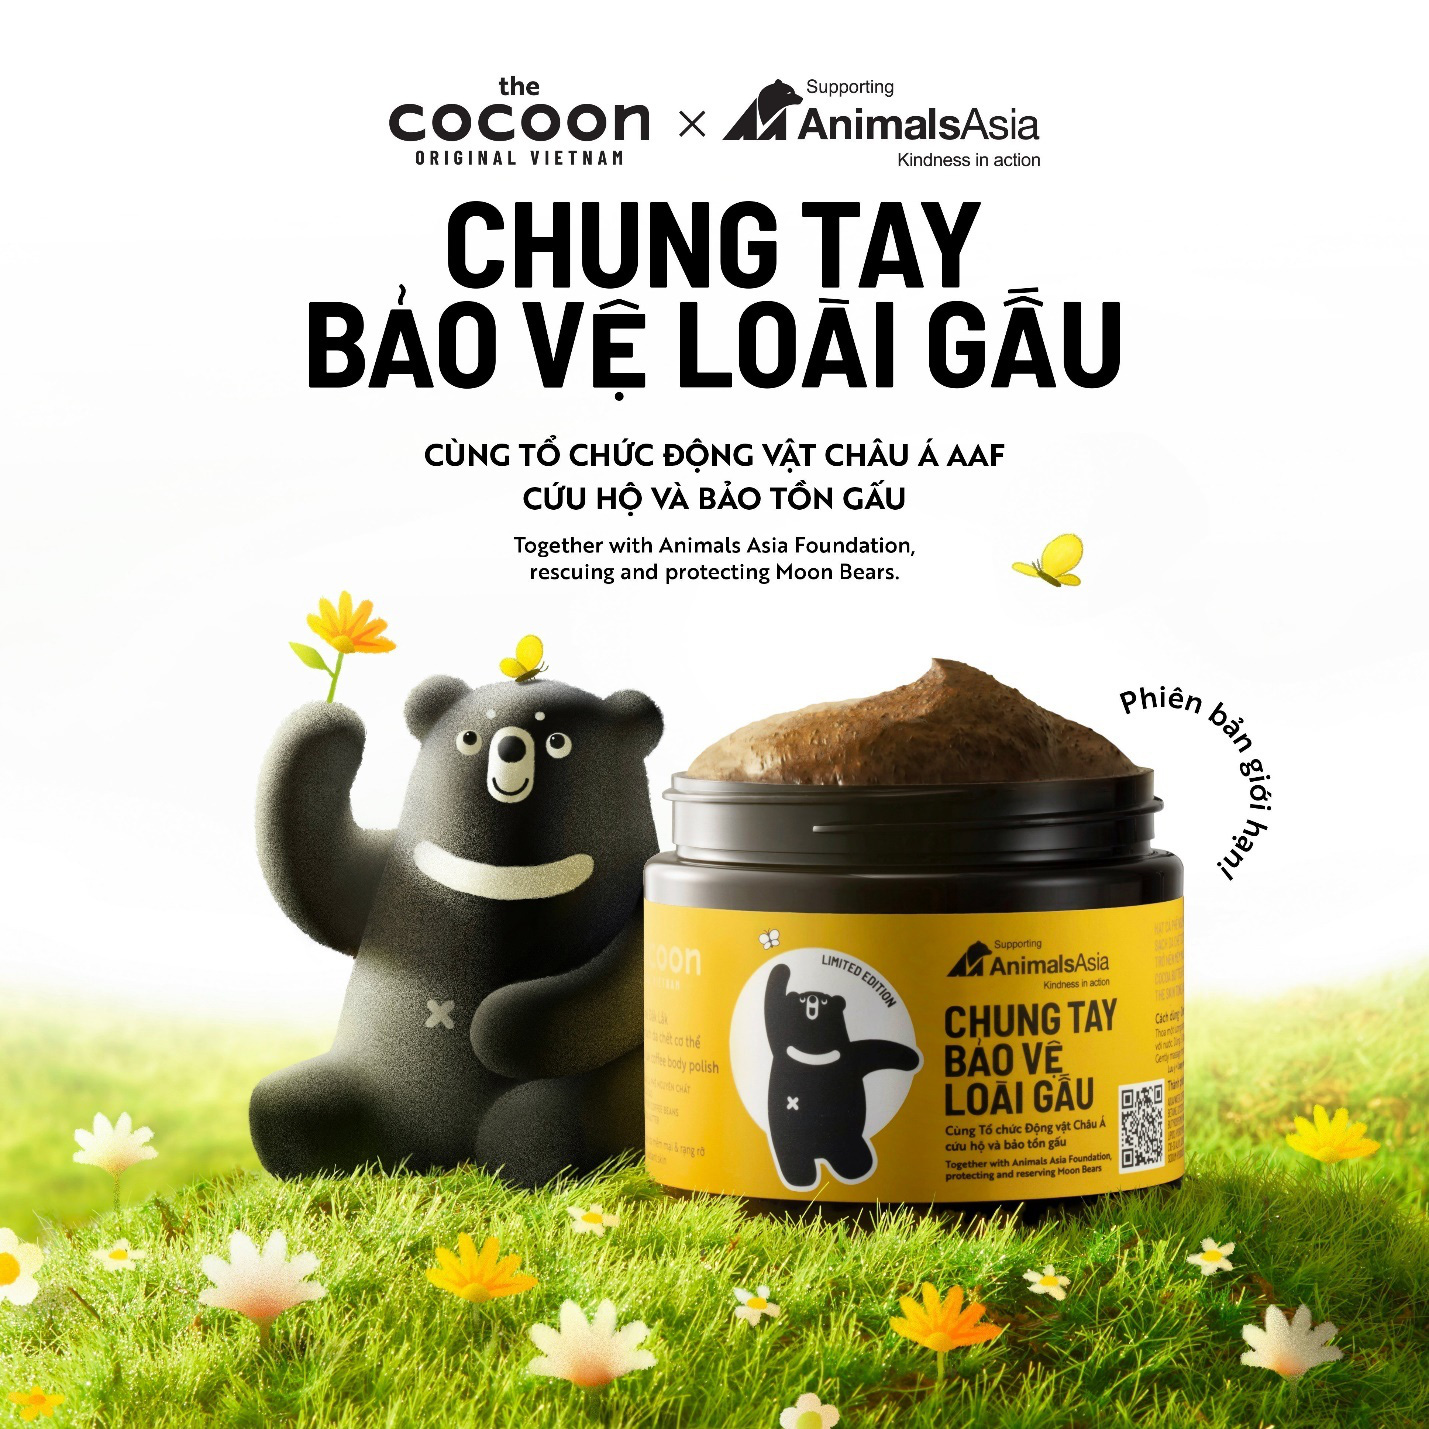 Cocoon - mỹ phẩm tiên phong tại Việt Nam hành động vì động vật - Ảnh 2.